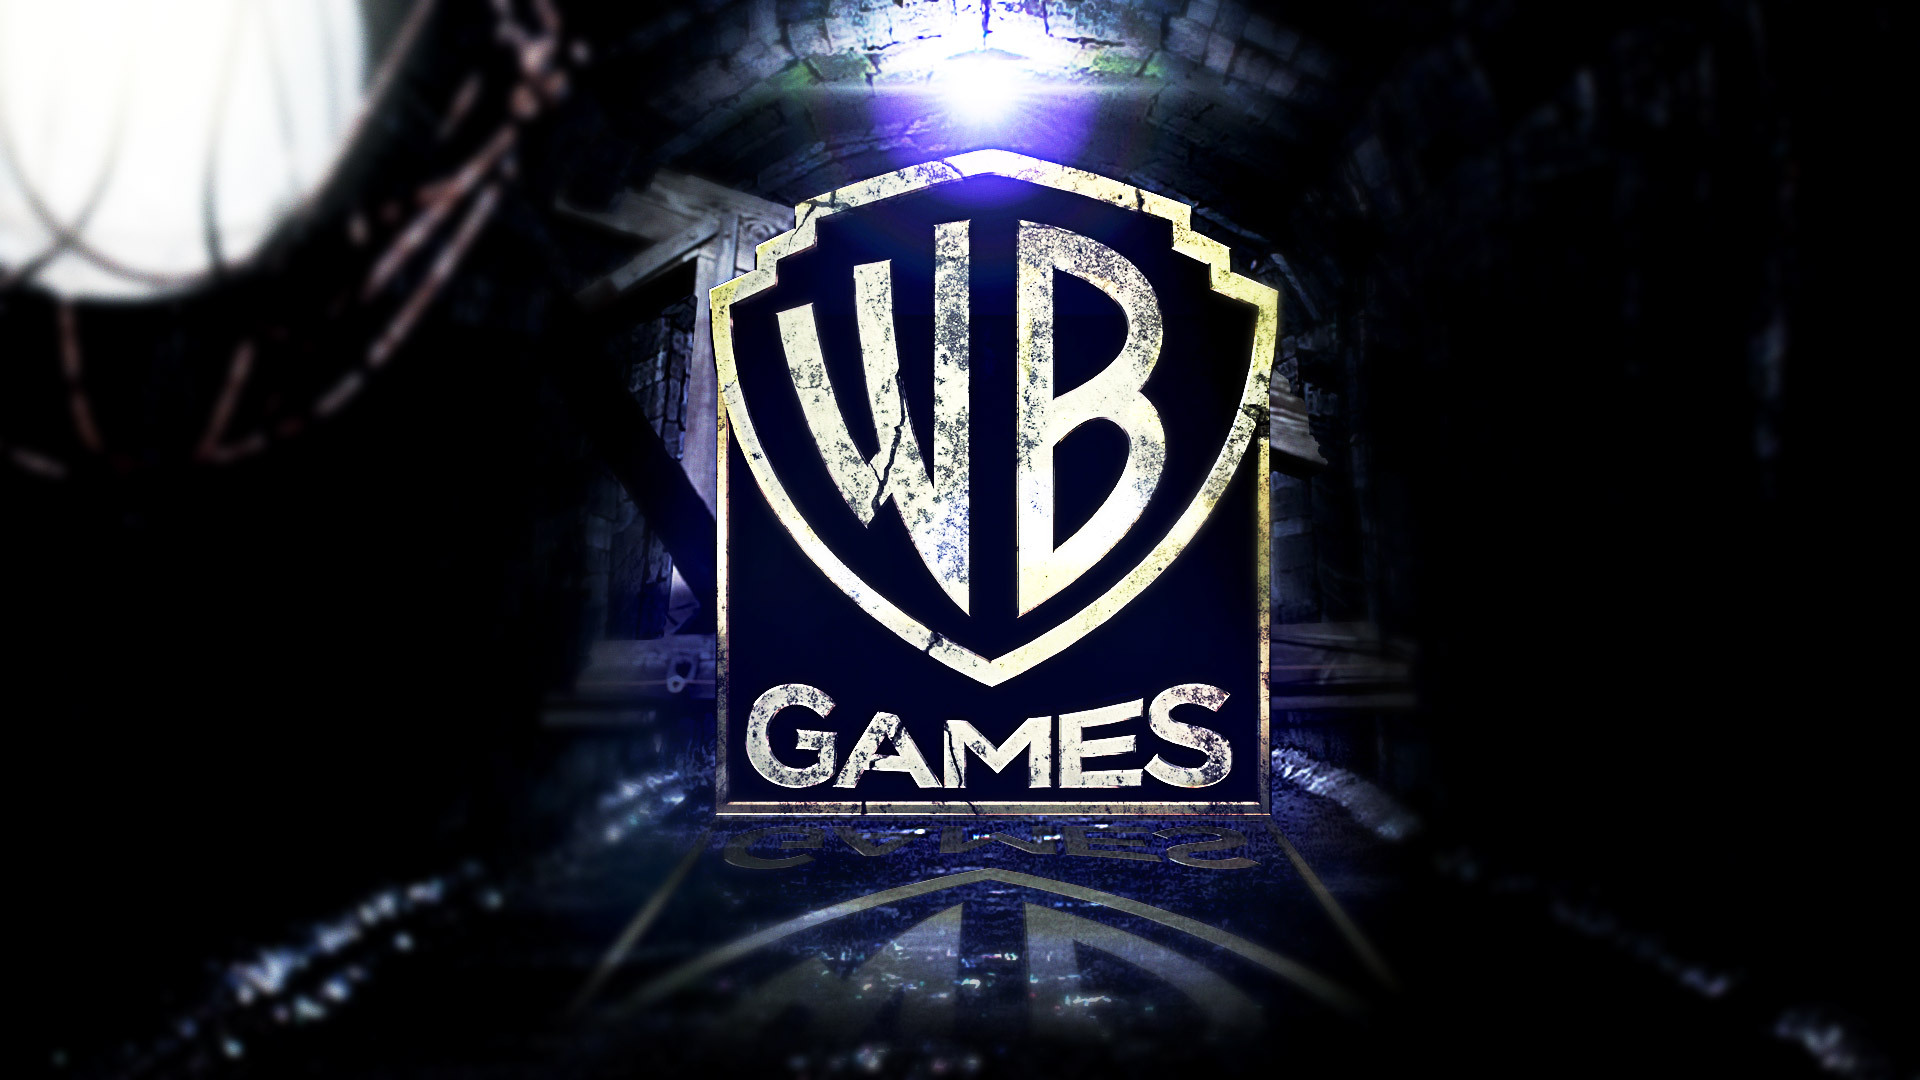 WB Games